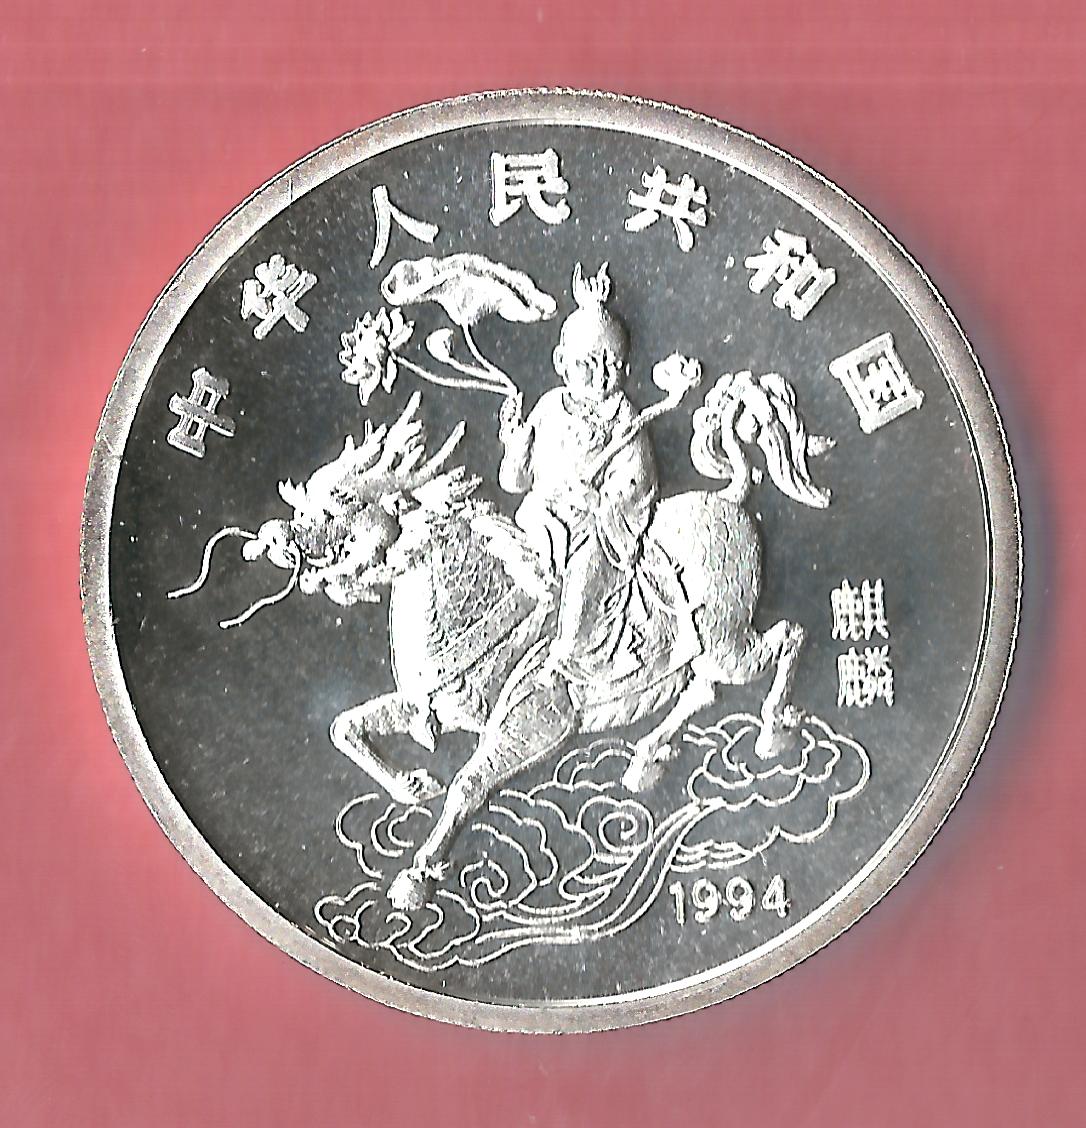  China 10 Yuan Einhorn 1994 st in 31,1 Gramm Münzenankauf Koblenz Frank Maurer p23   